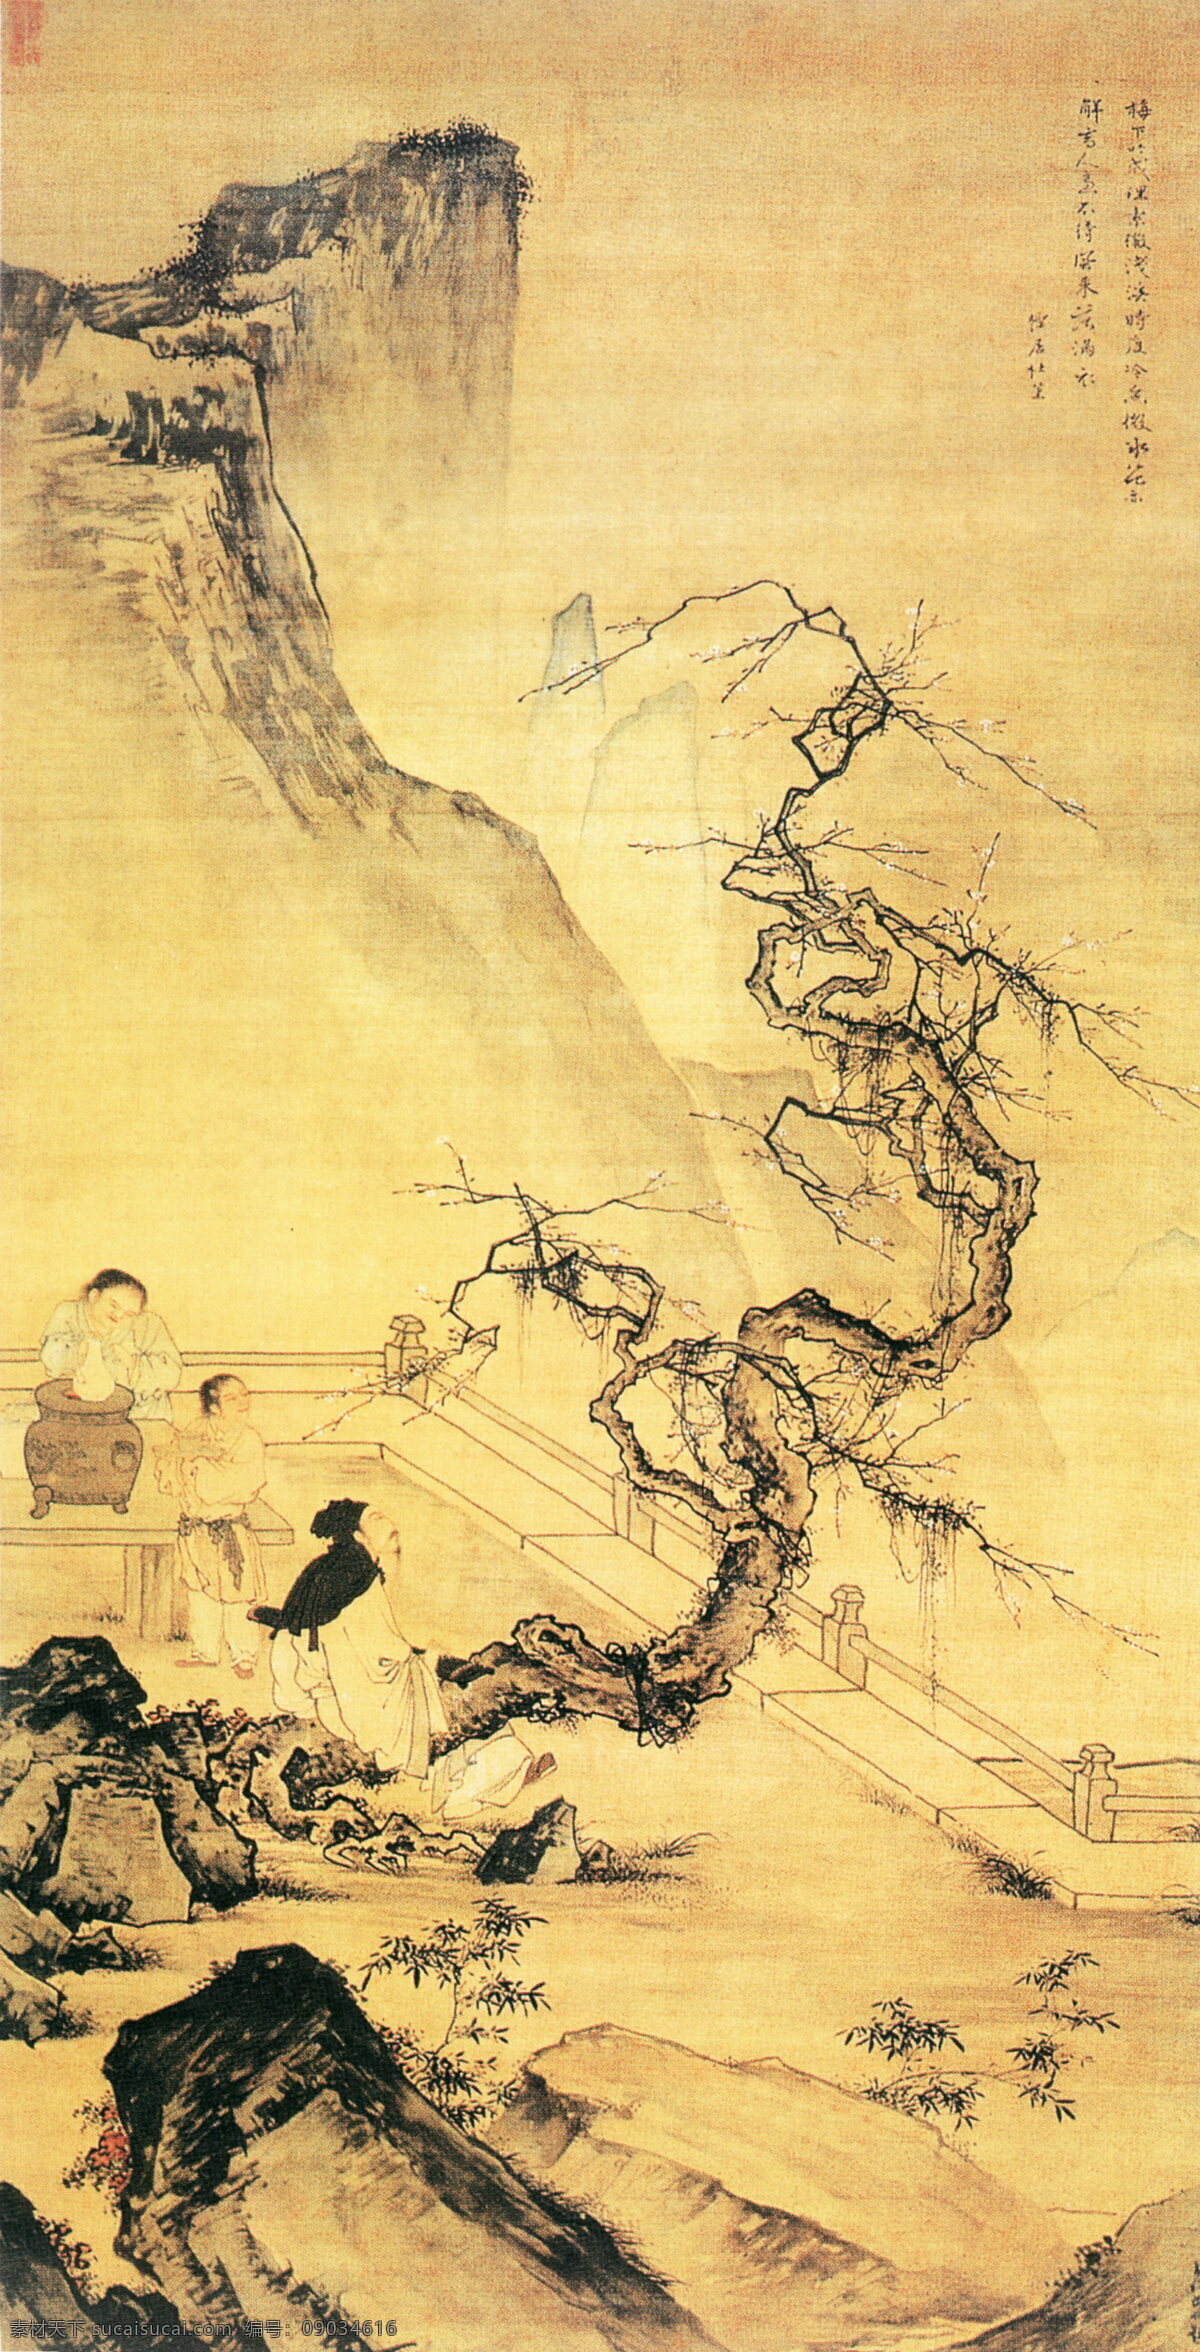 梅下横琴图 人物画 中国 古画 中国古画 设计素材 人物名画 古典藏画 书画美术 黄色